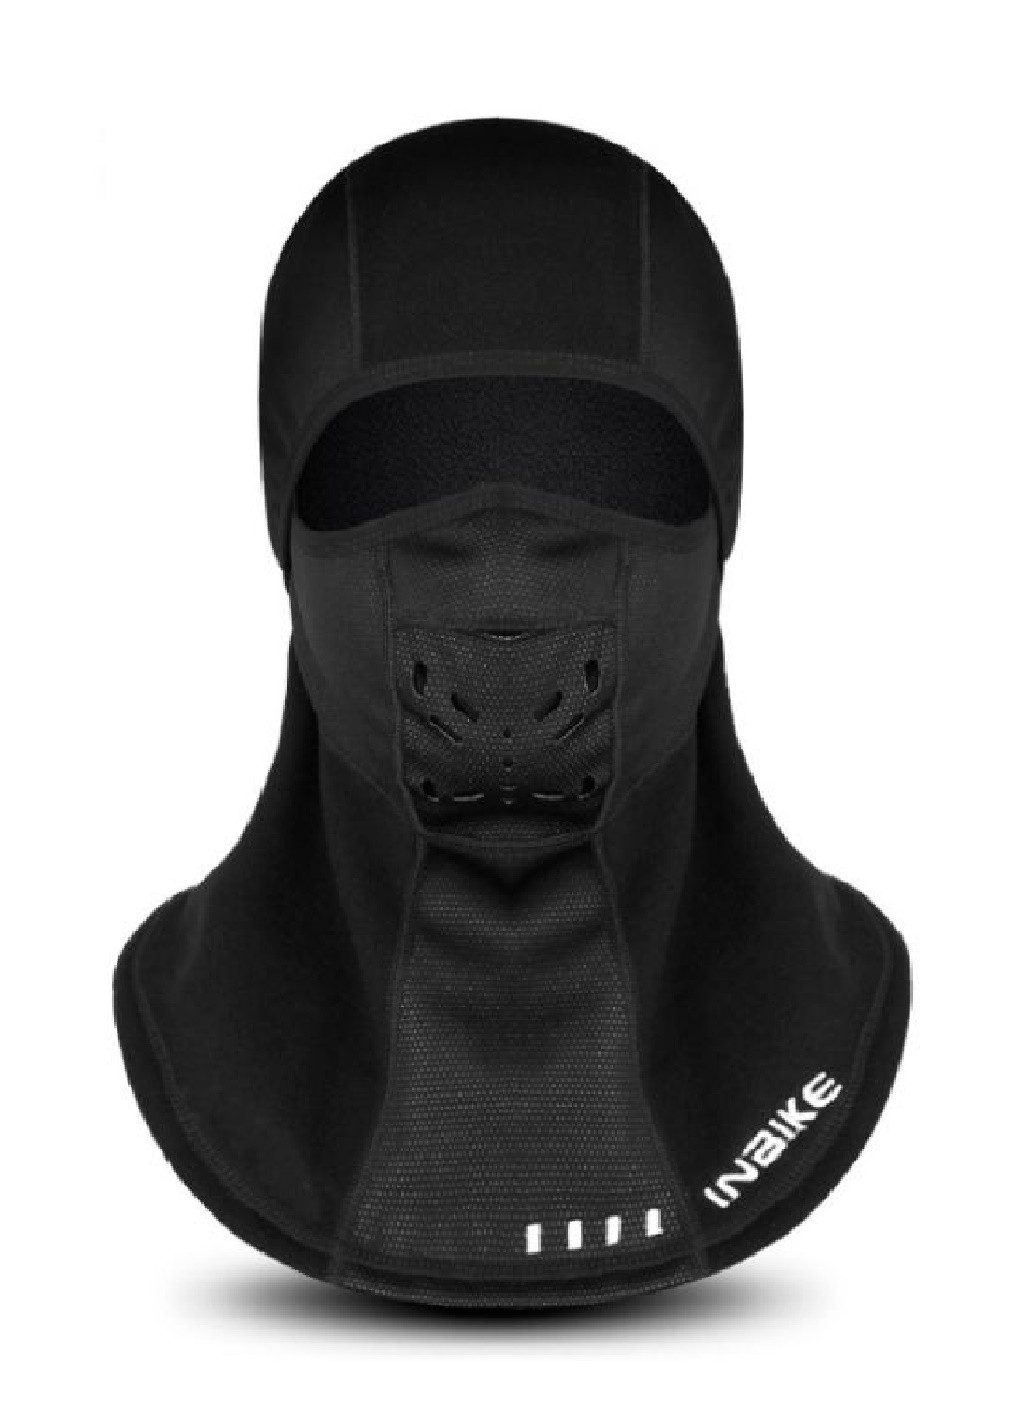 Francesco Marconi термо маска флисовая балаклава зимний бафф шарф подшлемник лыжная шапка (472820-prob) черная логотип черный кэжуал флис производство - Китай